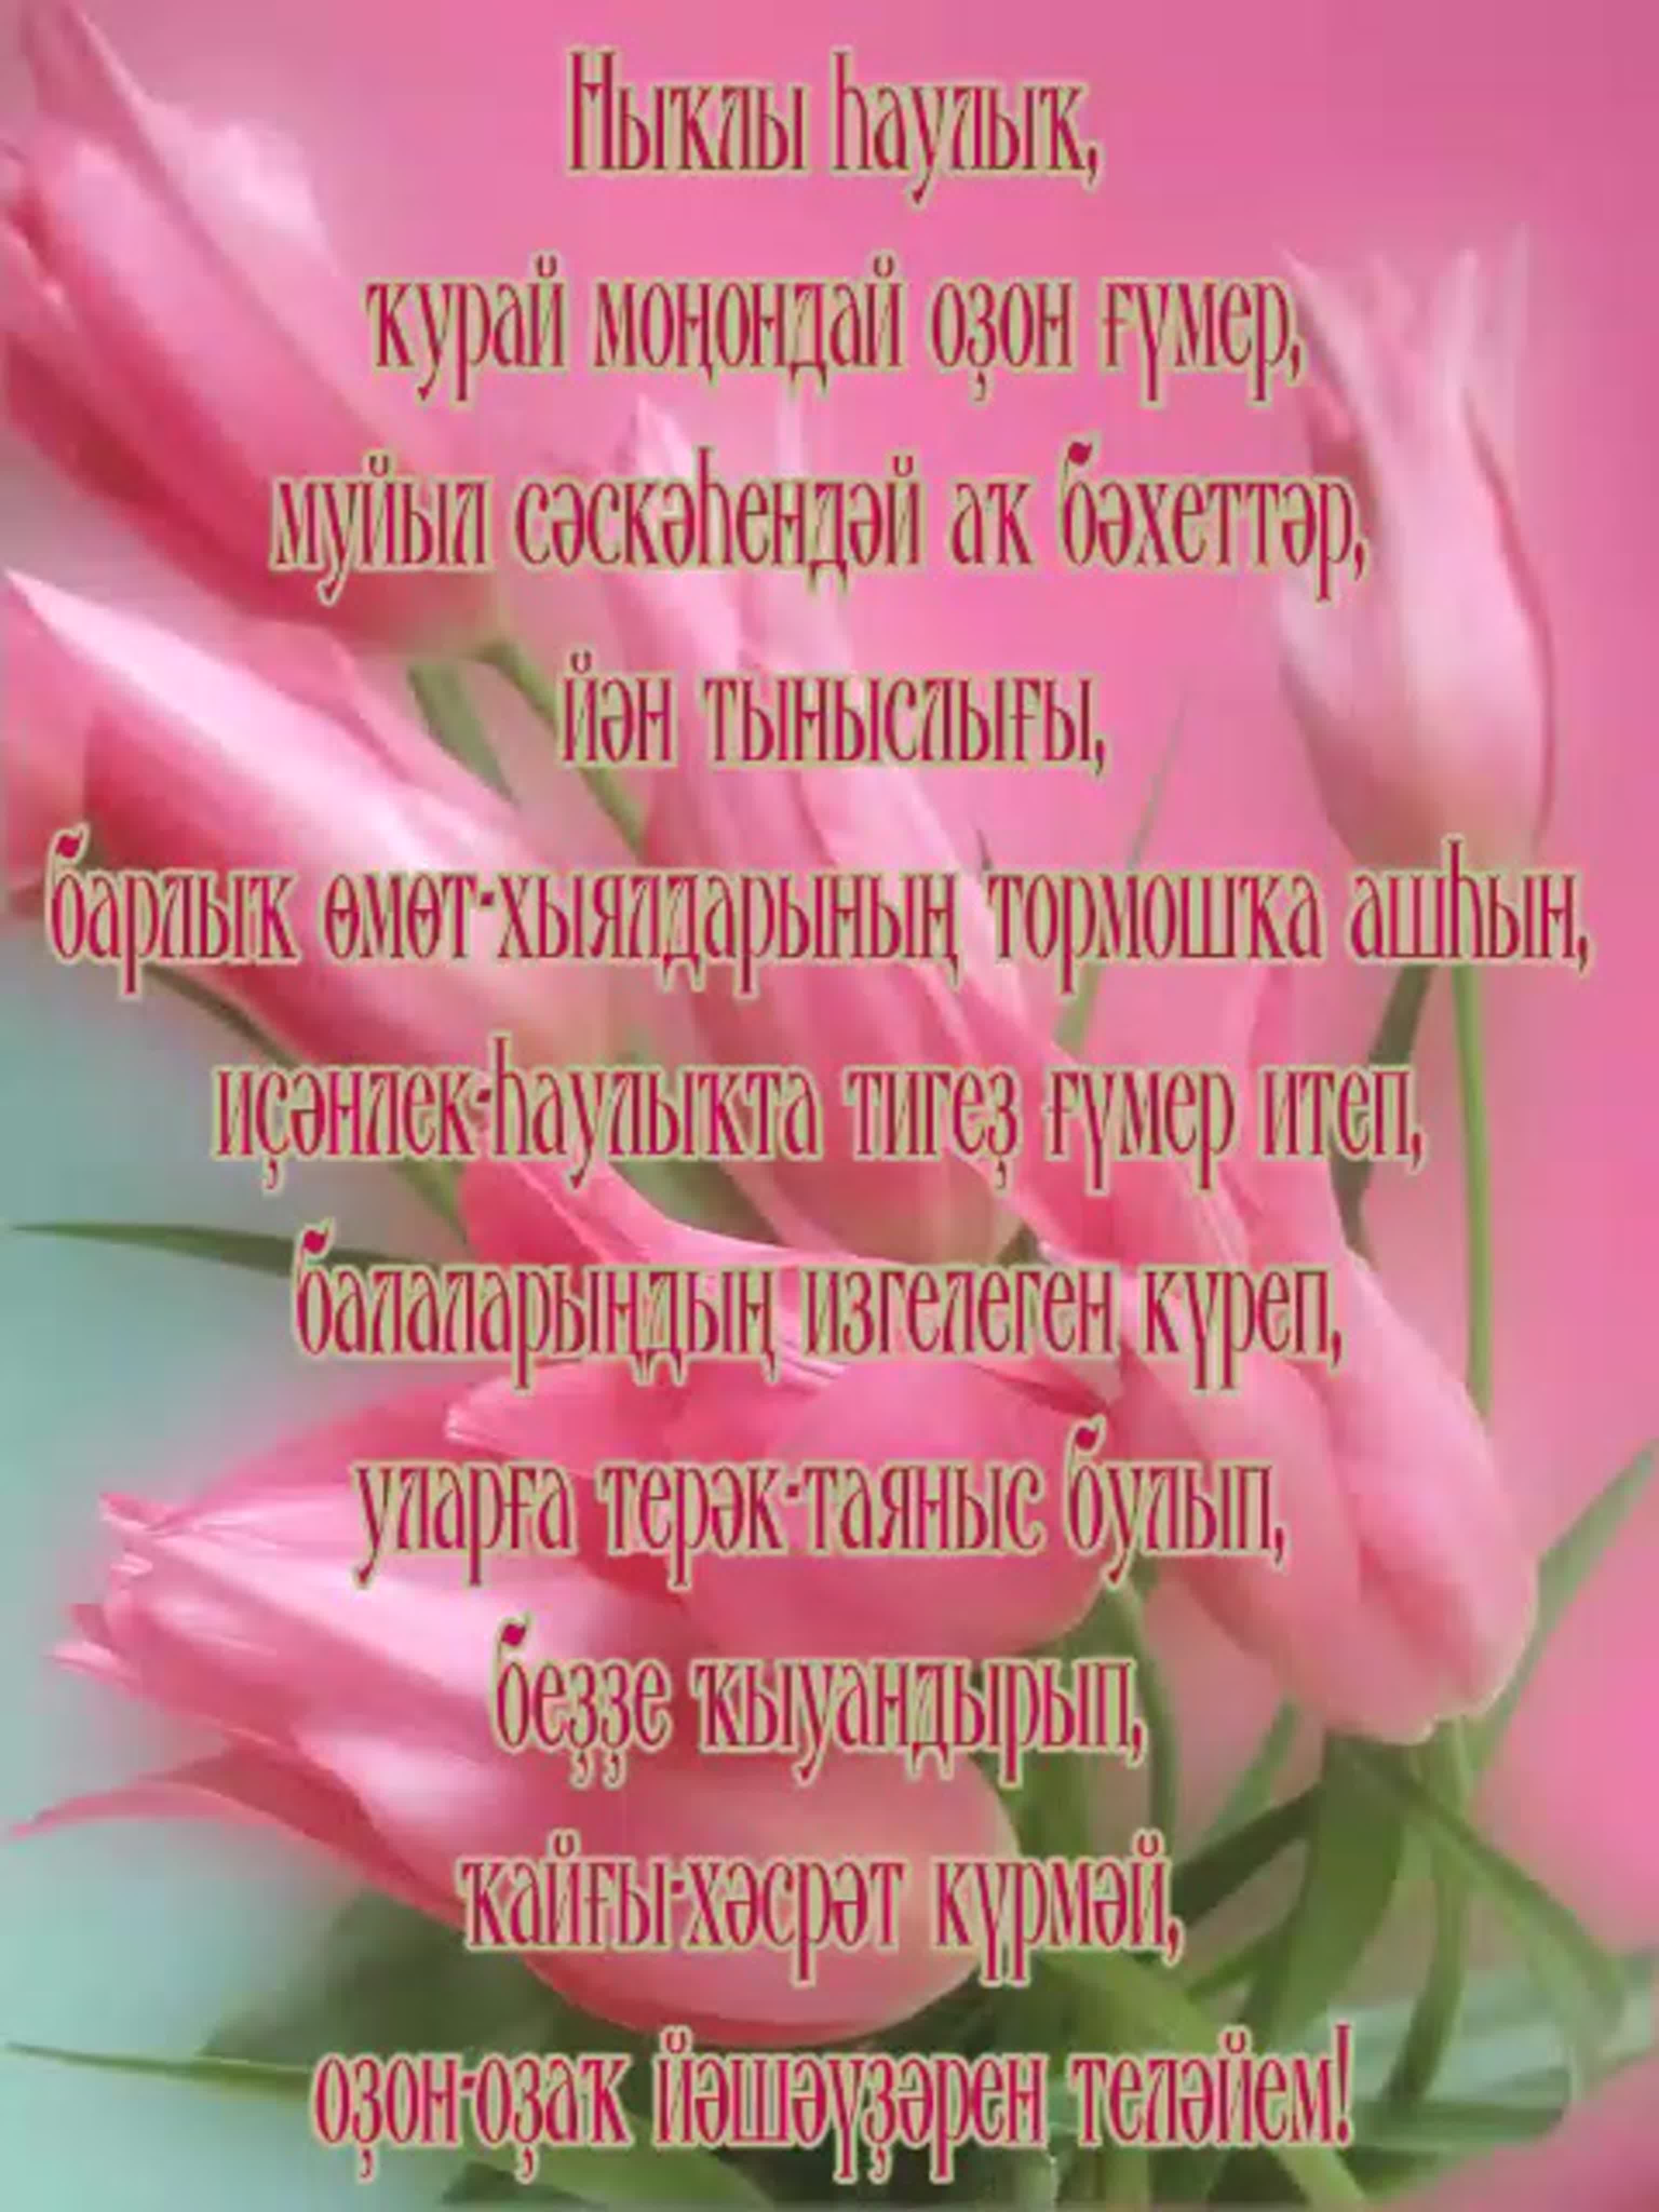 Поздравление сестры на башкирском языке. С днем рождения башкирские поздравления с открытками. Поздравления с днём рождения на башкирском. Поздравляю с днём рождения на башкирском языке. Открытки с днём рождения на башкирском.